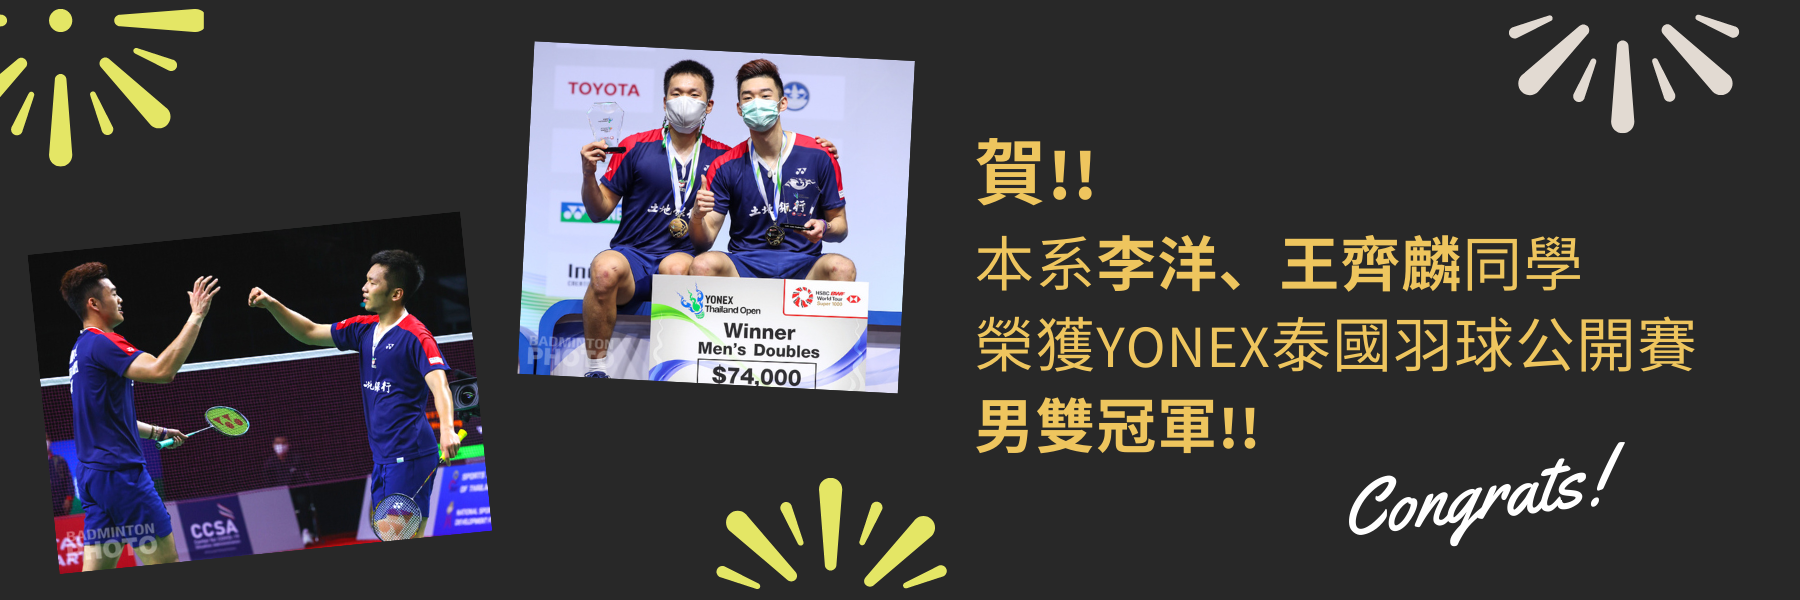 本系李洋、王齊麟同學榮獲YONEX泰國羽球公開賽 男雙冠軍